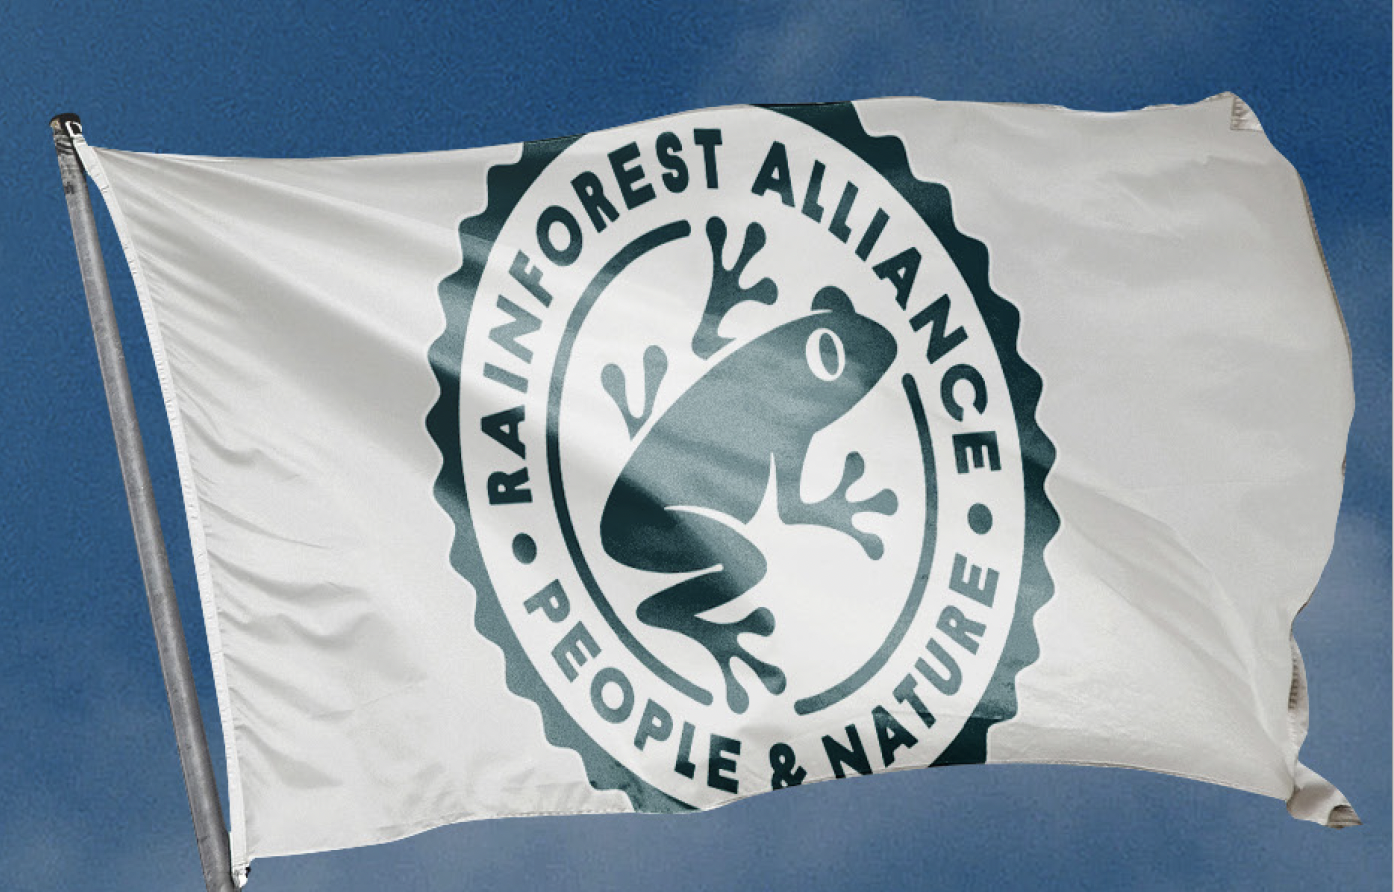 Rainforest Alliance logo on white flag